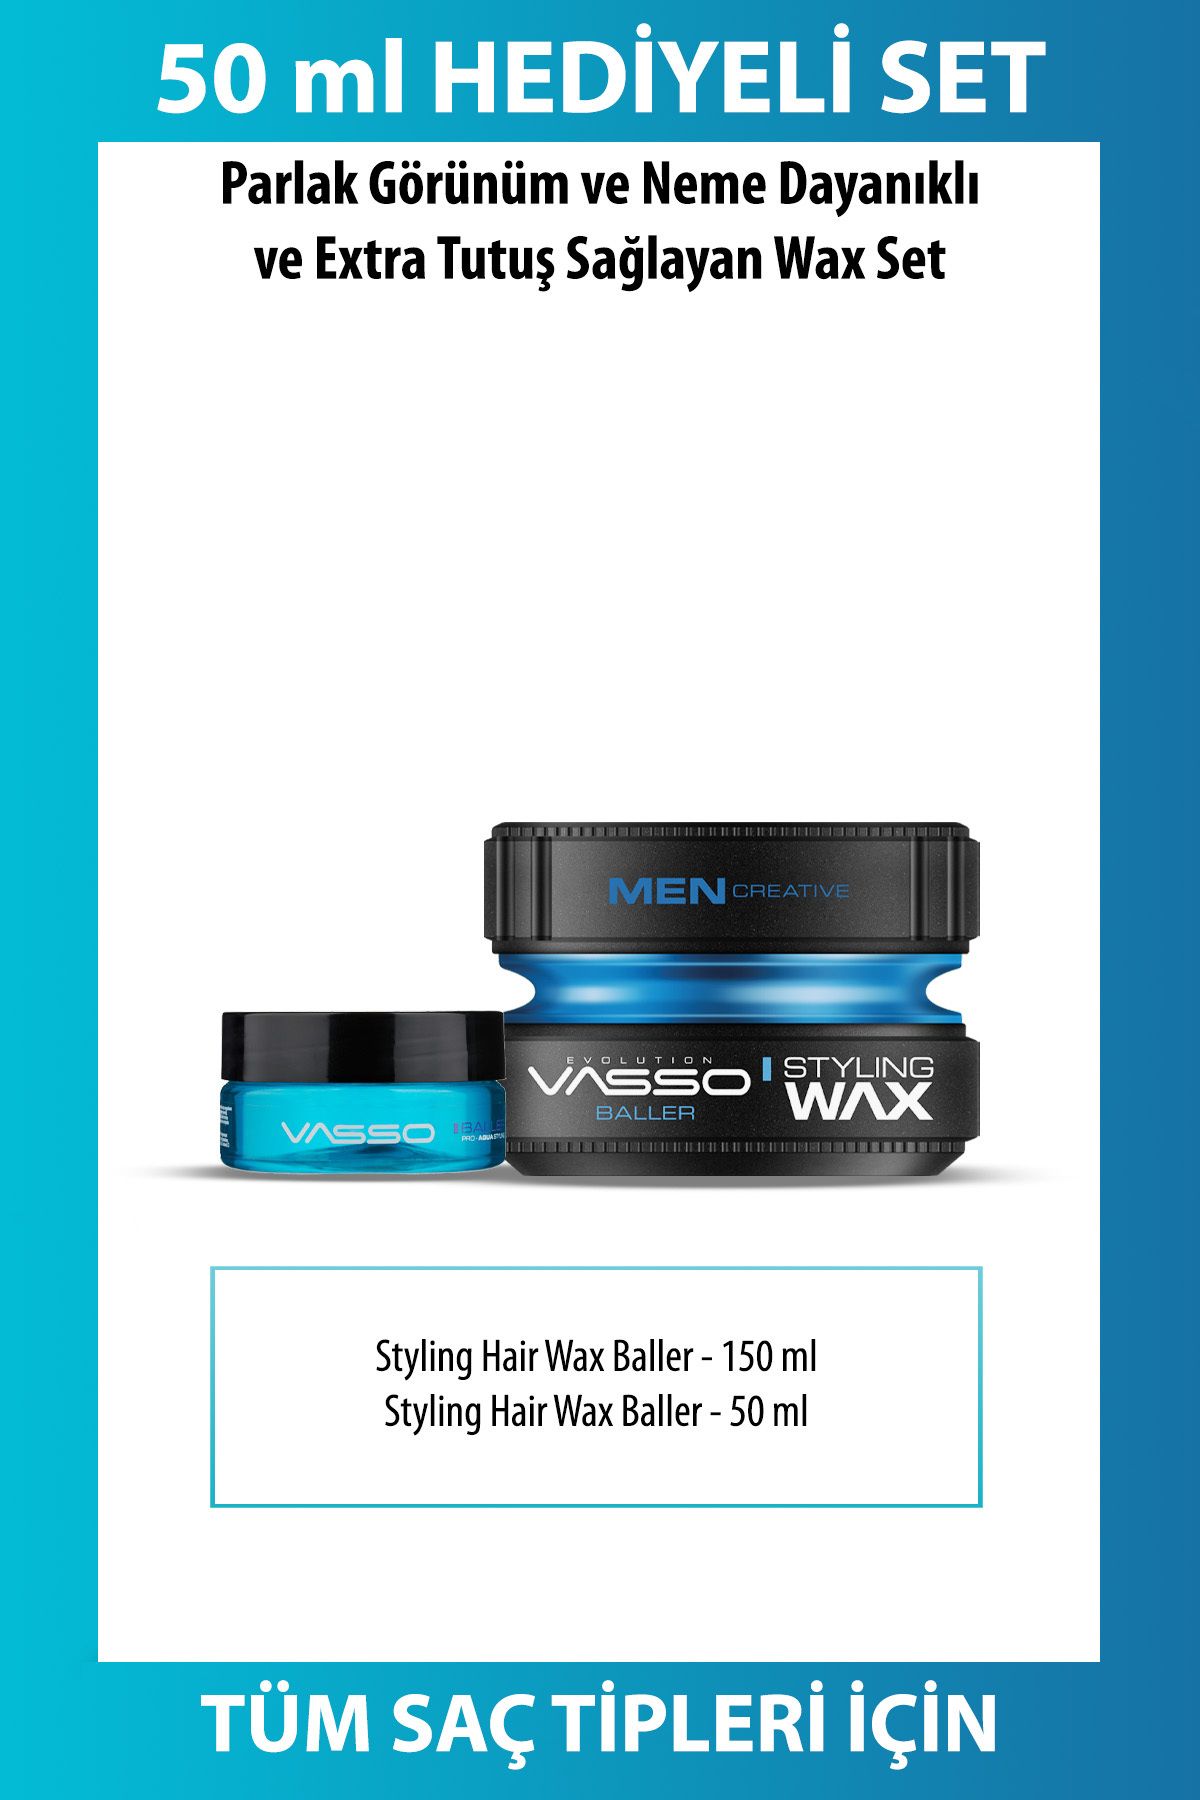 Vasso Men 24 Saat Tutuş Sağlayan Tüm Saç Tipleri Için Parlak Görünüm Veren Wax(ÇANTA BOY HEDİYELİ)-baller